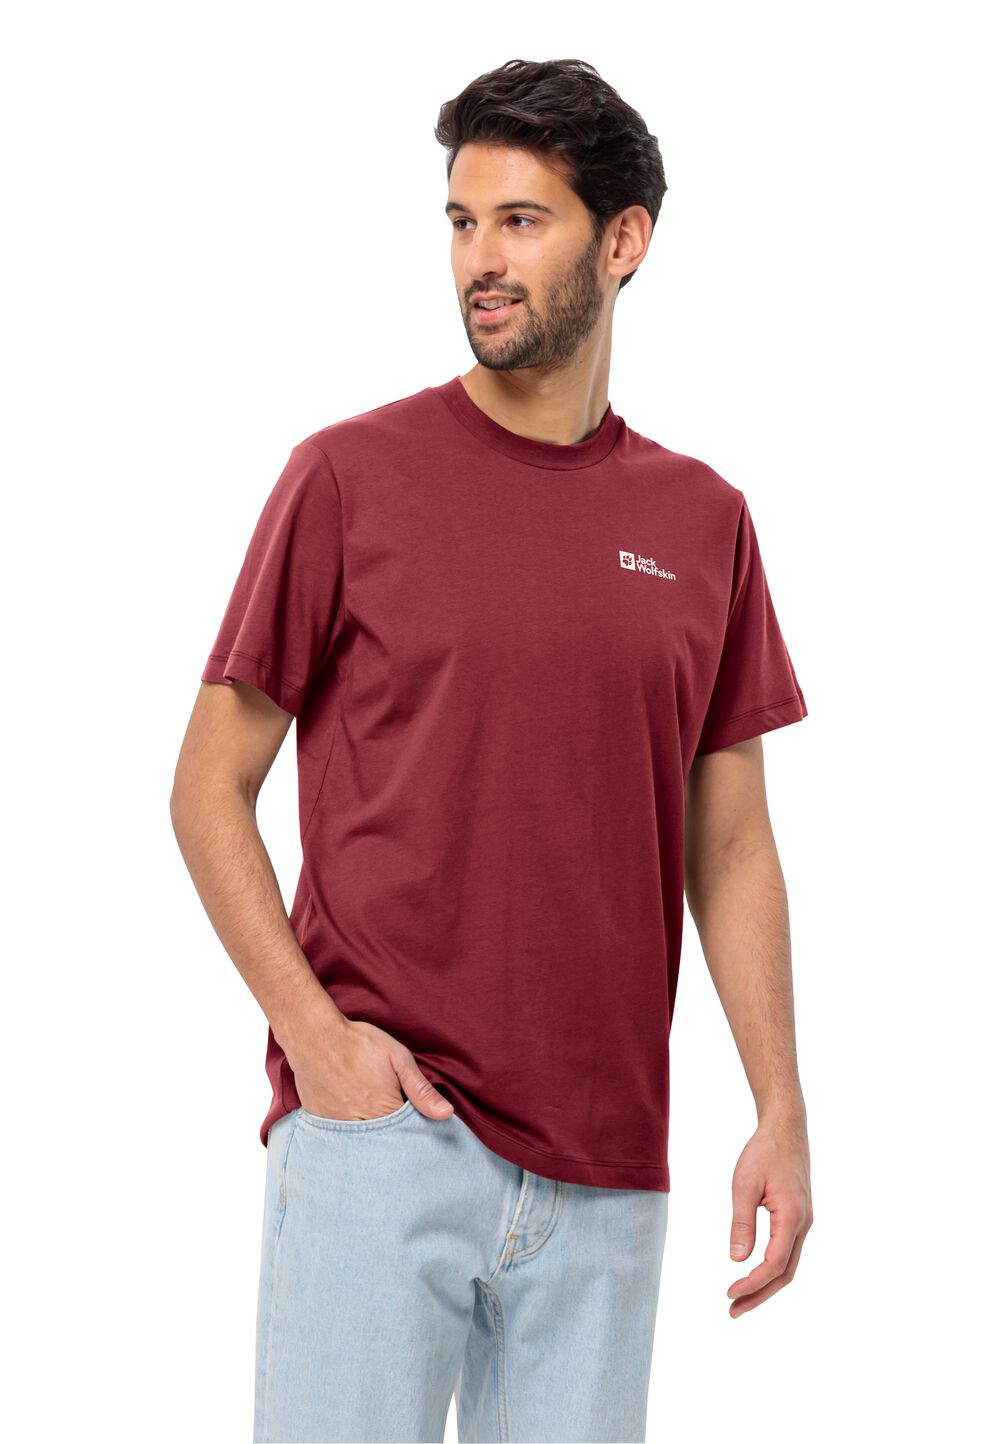 Jack Wolfskin Essential T-Shirt Men Heren T-shirt van biologisch katoen M purper deep ruby